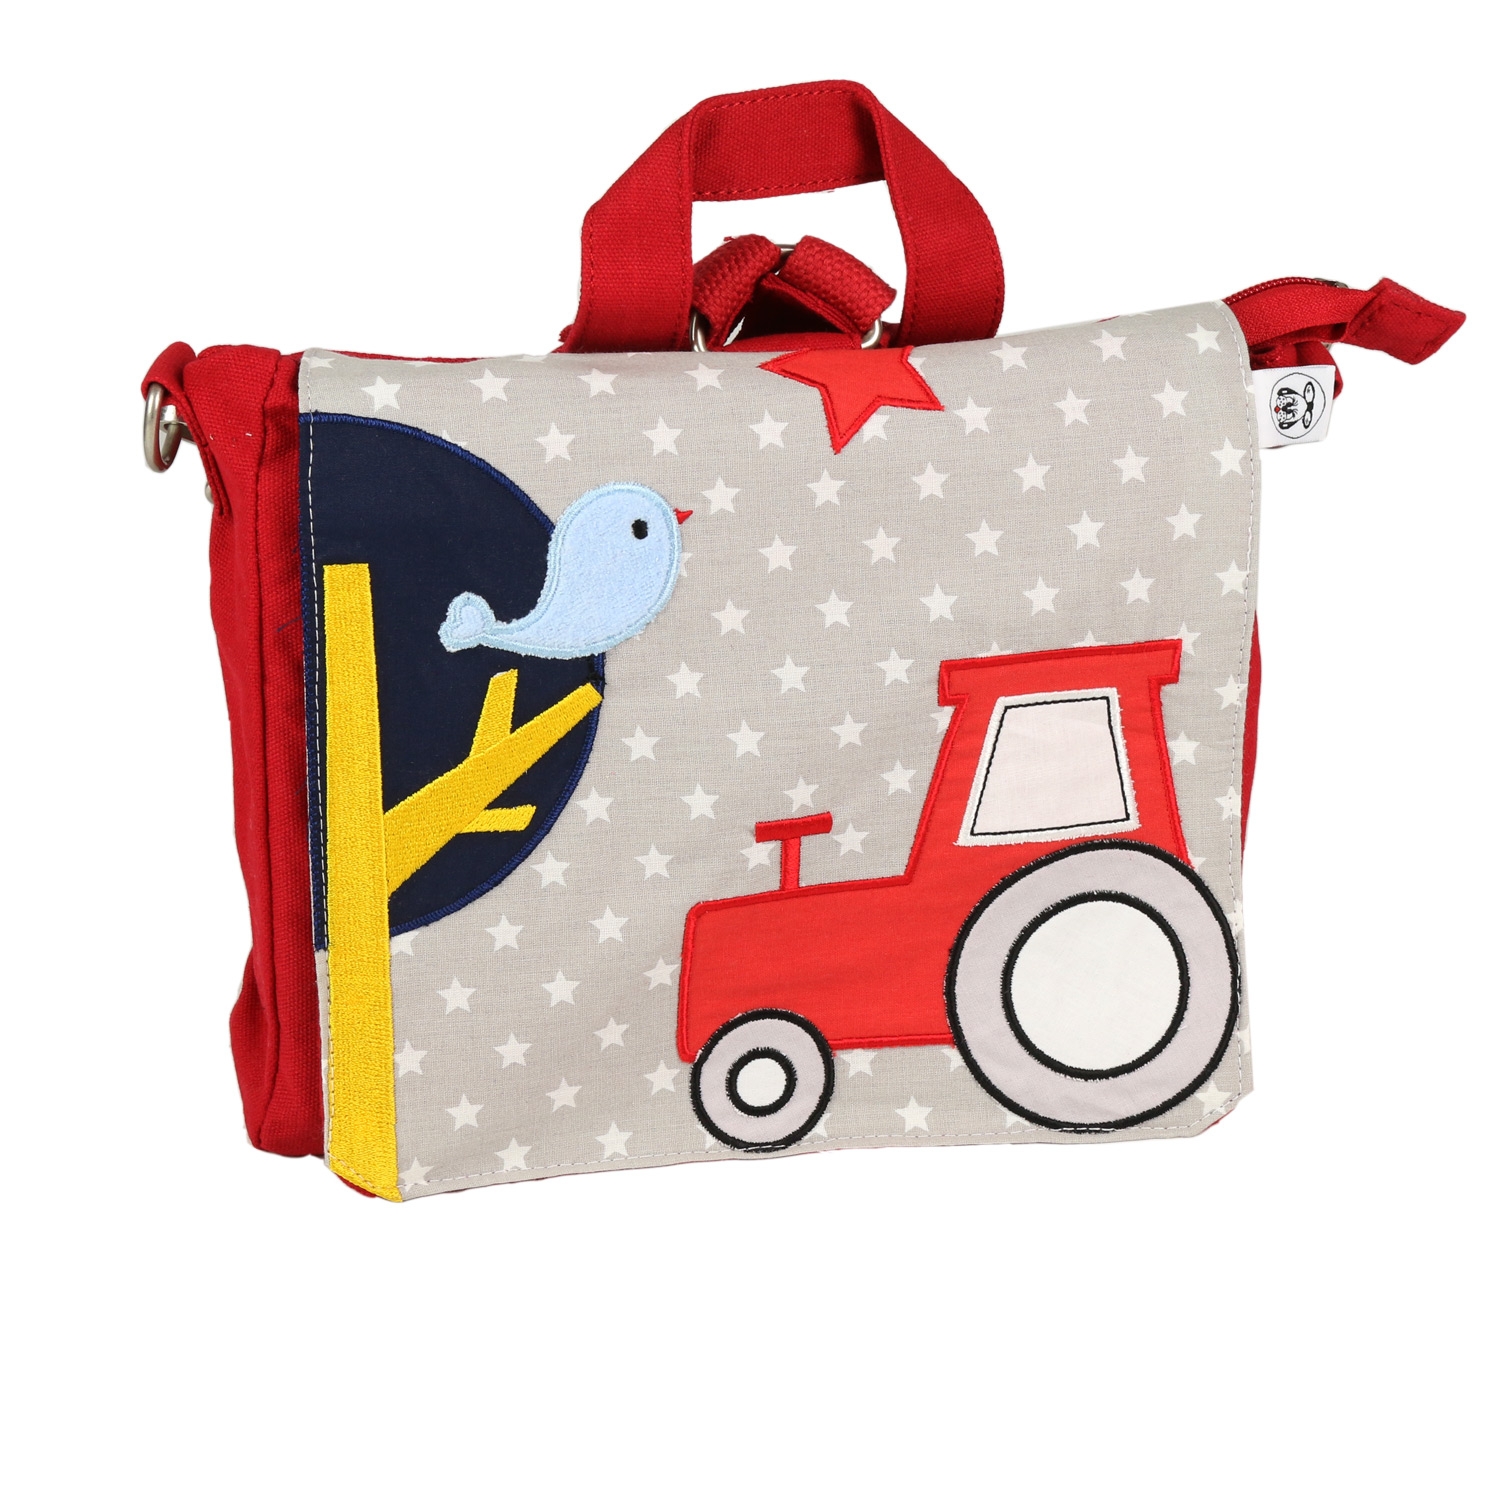 ★ Ausverkauft!!! TRAKTOR: Kindergartentasche / Rucksack in Rot - personalisiert